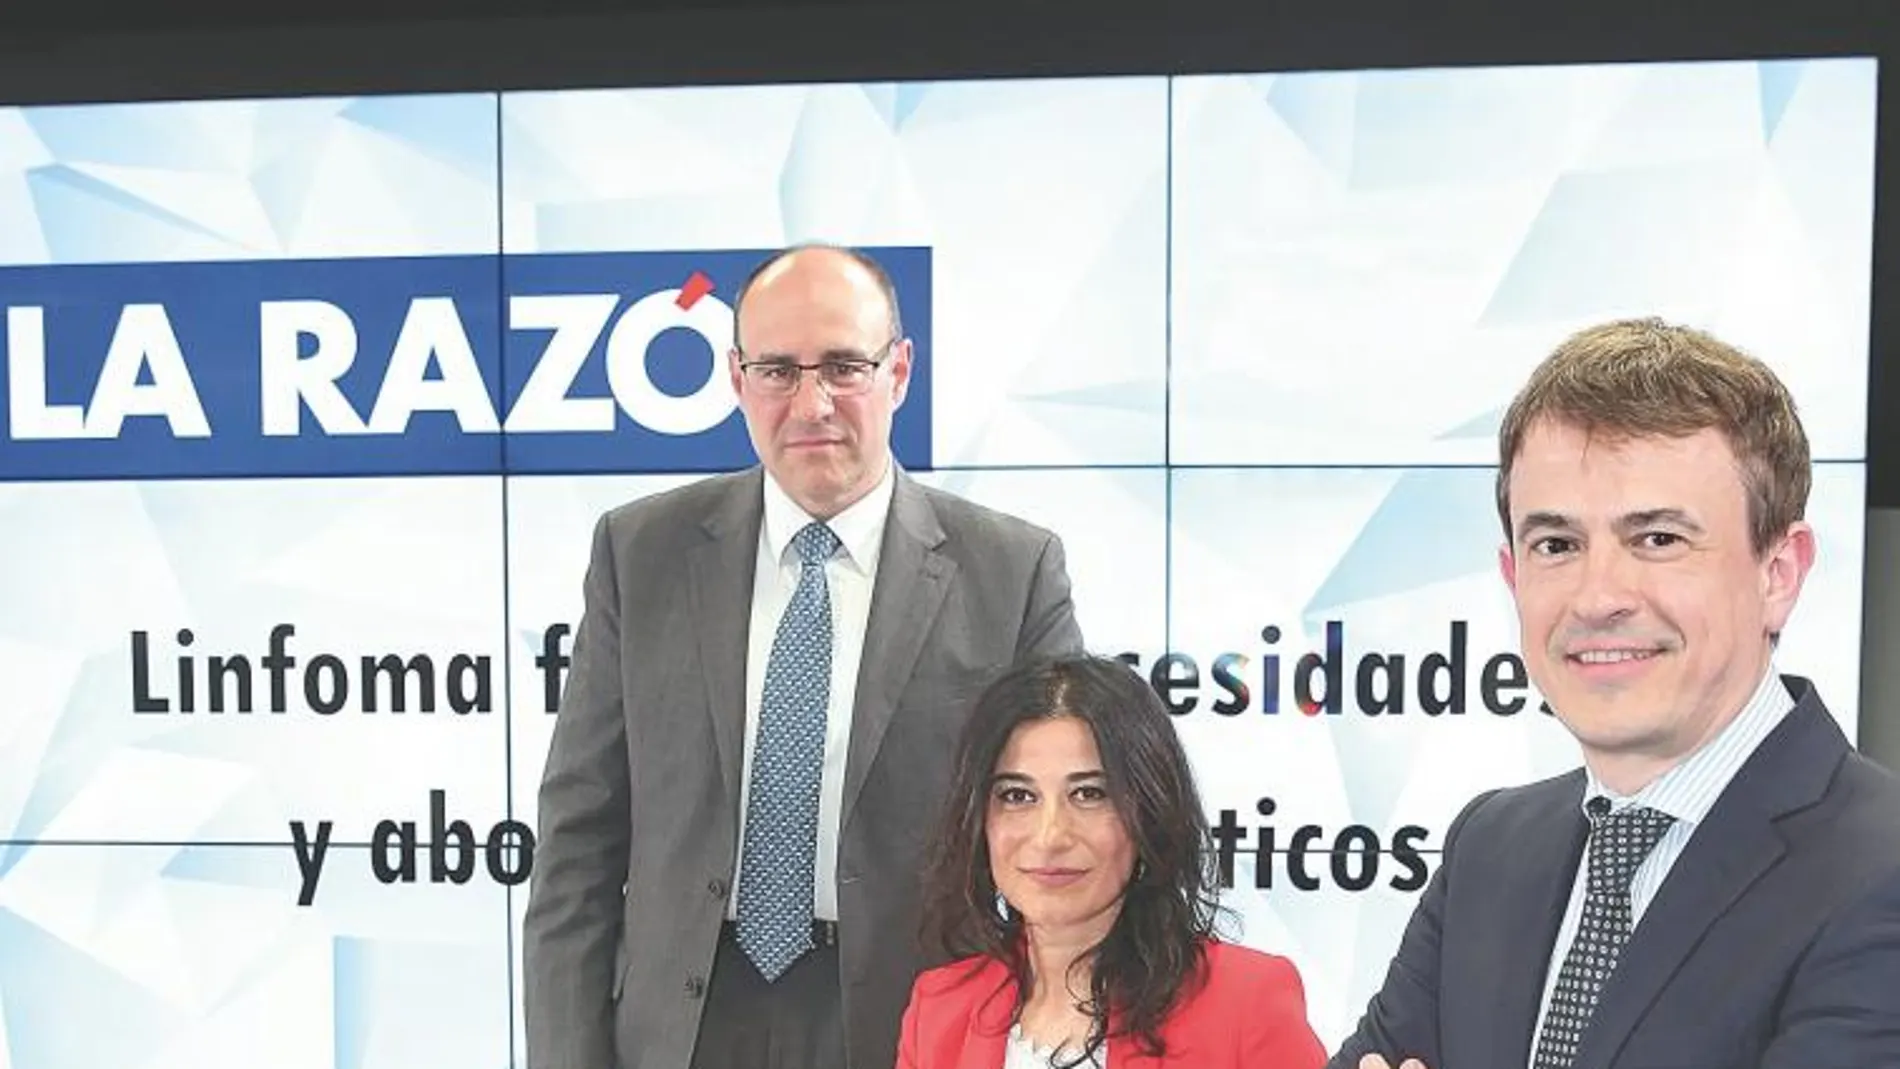 En la imagen, Miguel Canales, Annarita Gabriele y José Manuel Sancho